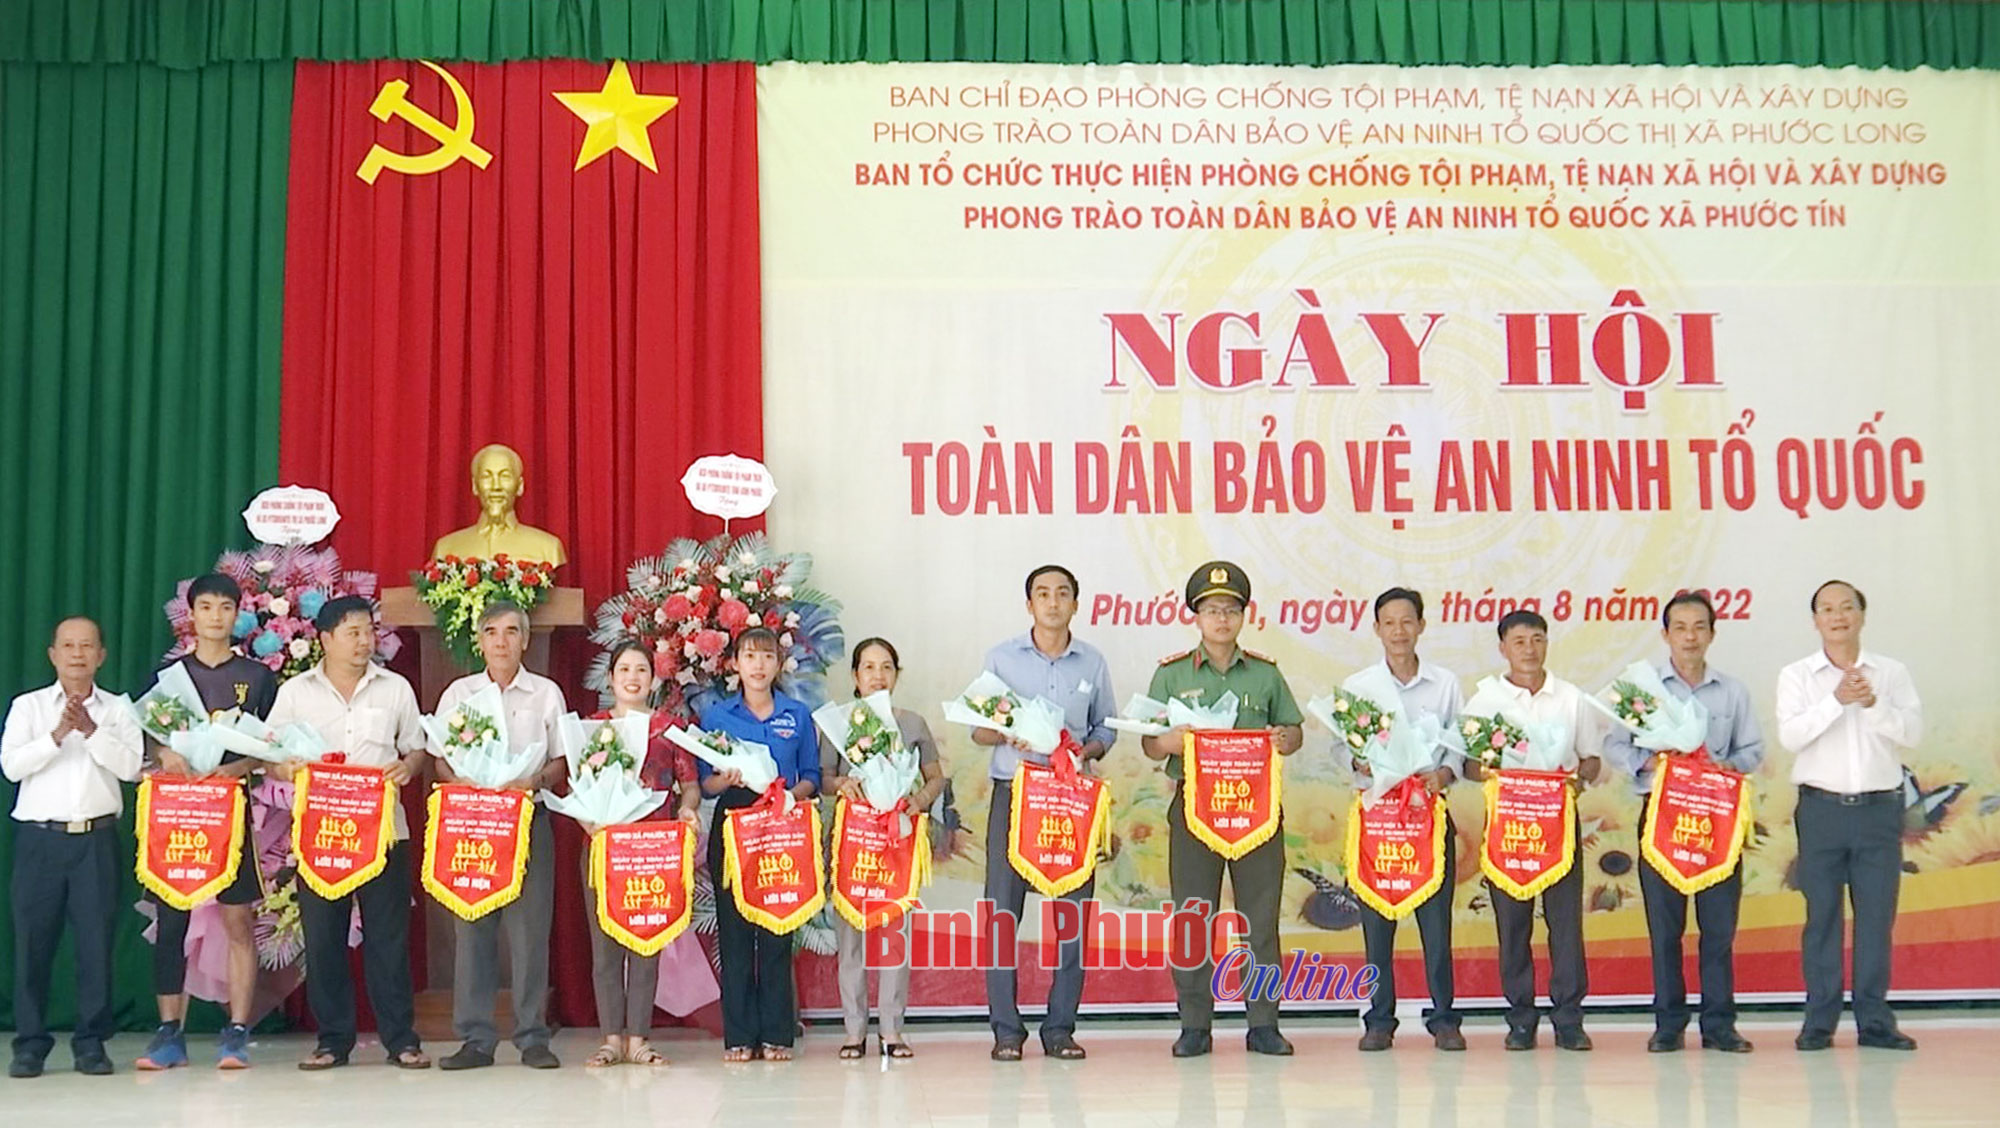 Ngày hội toàn dân - Ngày hội toàn dân là một trong những ngày quan trọng nhất của Việt Nam, là dịp để toàn dân đoàn kết, tinh thần đồng điệu hơn bao giờ hết. Trong không khí rộn ràng của ngày hội, mọi người cùng tham gia những hoạt động thể thao, văn hóa, giải trí và thể hiện tình yêu quê hương, góp phần xây dựng Việt Nam ngày càng phát triển và giàu mạnh.